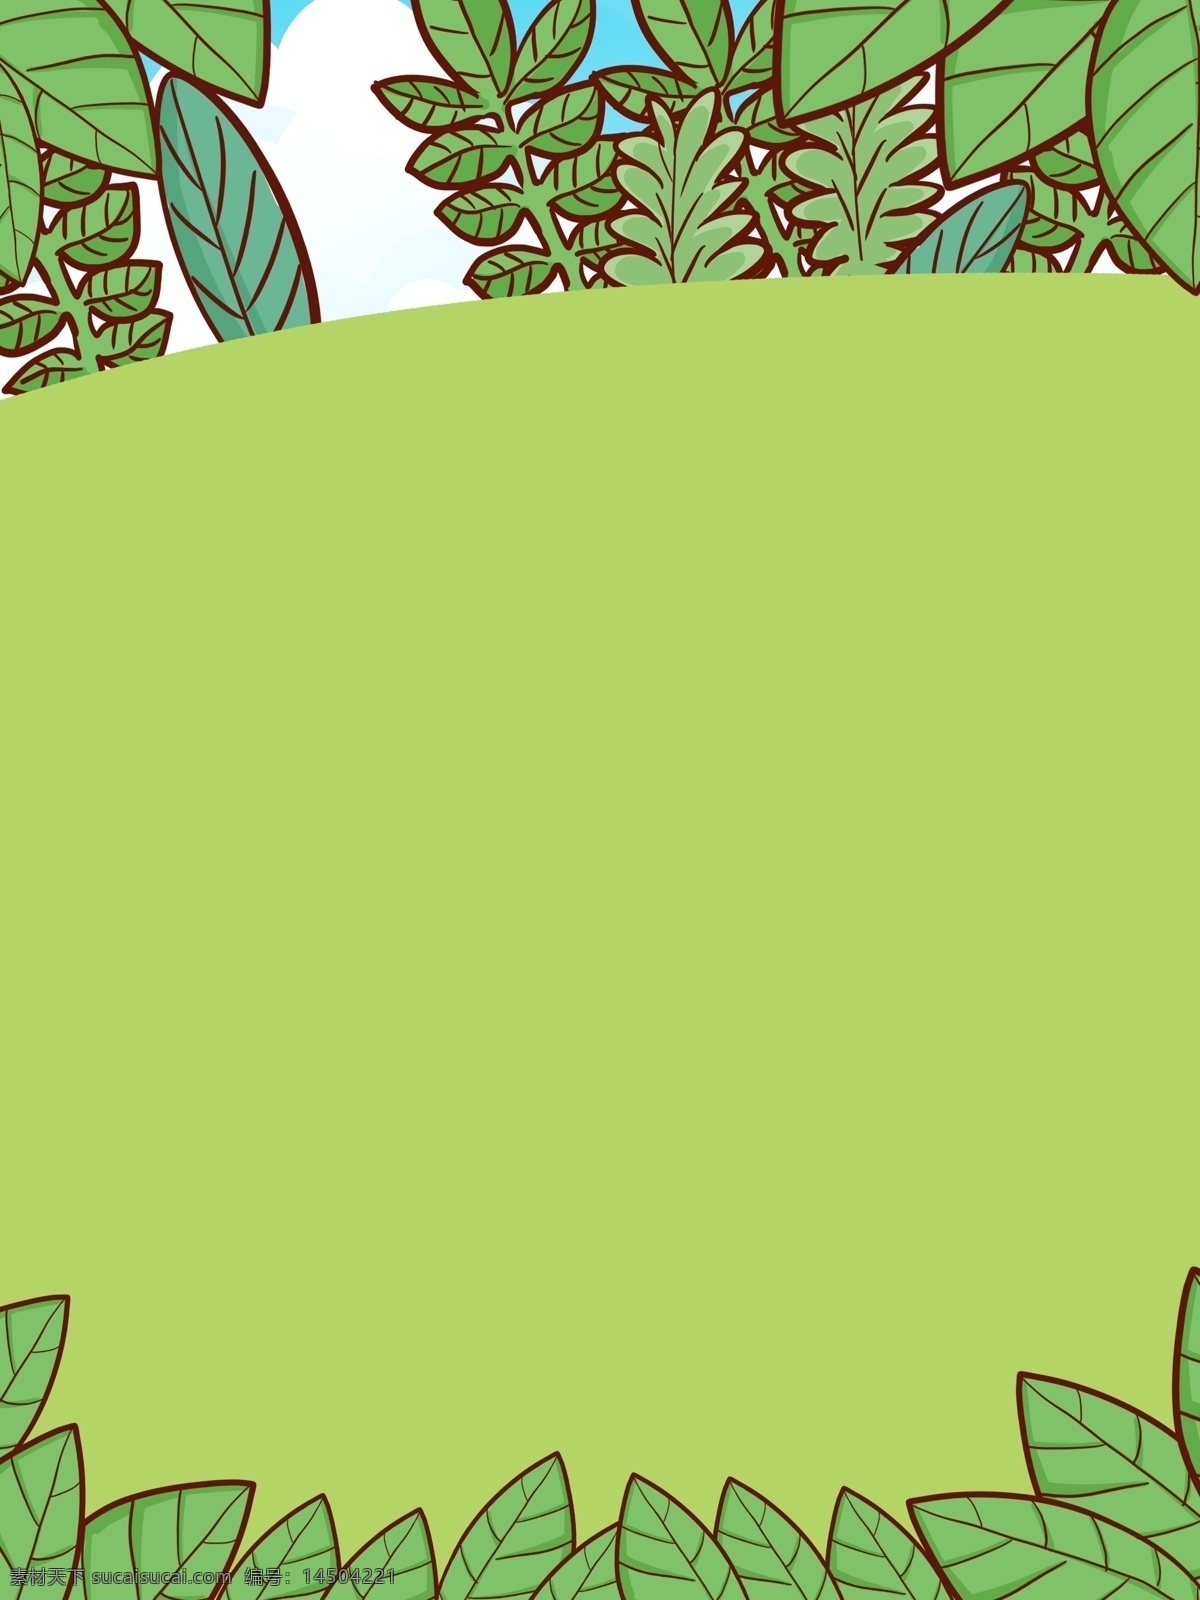 彩绘 清新 春季 植物 背景 树叶背景 绿色背景 插画背景 植物背景 唯美 草地背景 绿地背景 蓝天白云